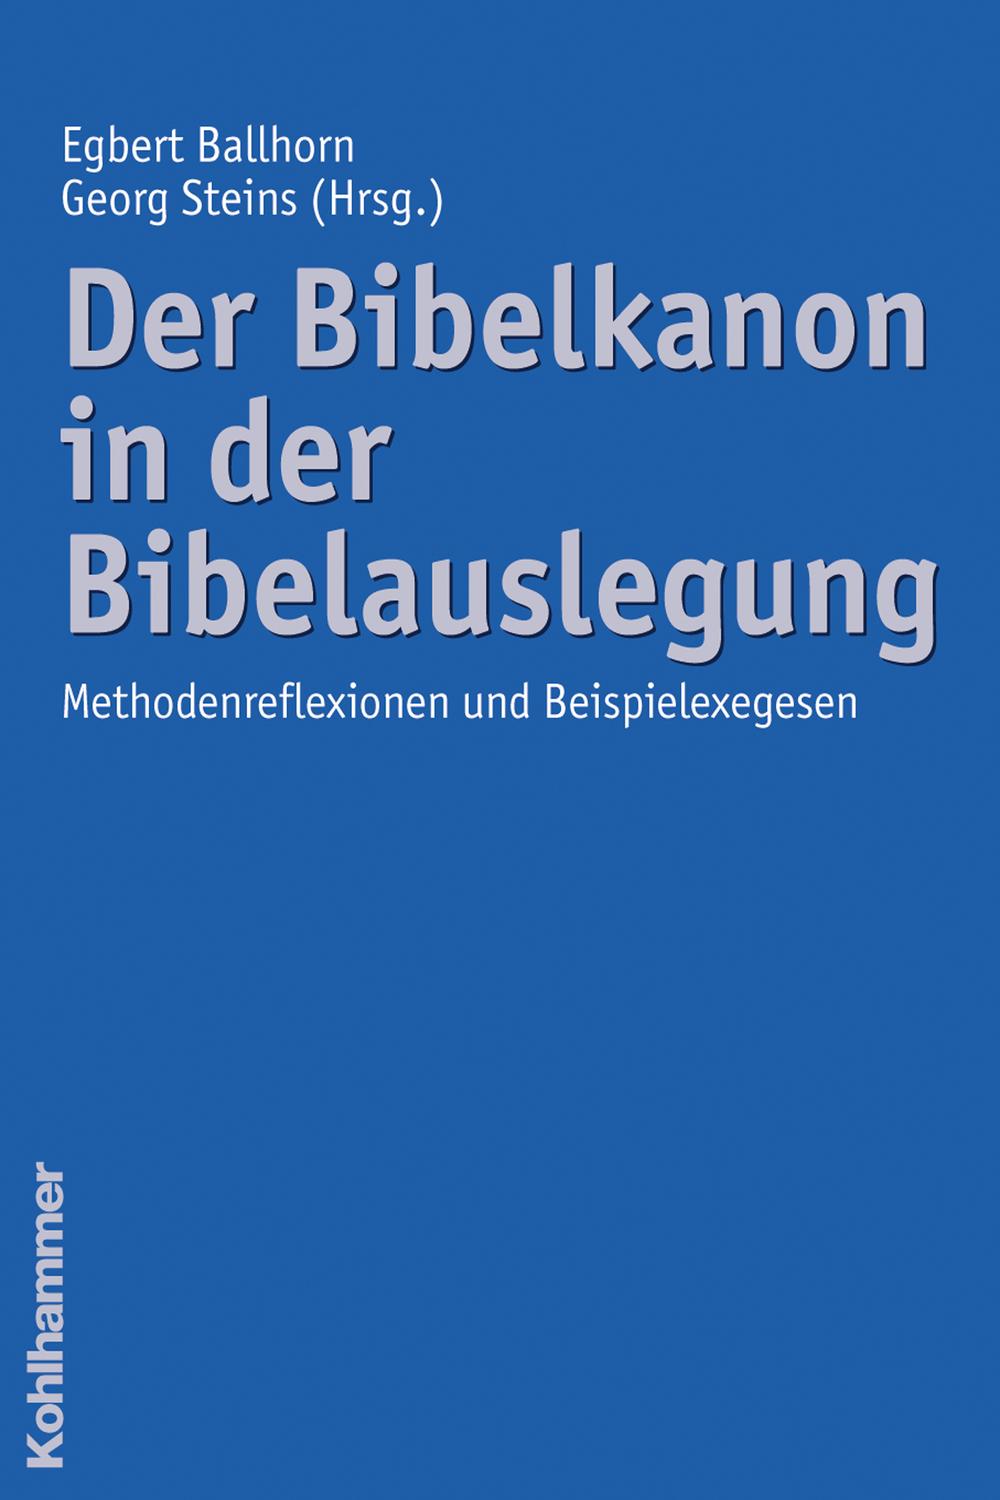 Der Bibelkanon in der Bibelauslegung - Egbert Ballhorn, Georg Steins